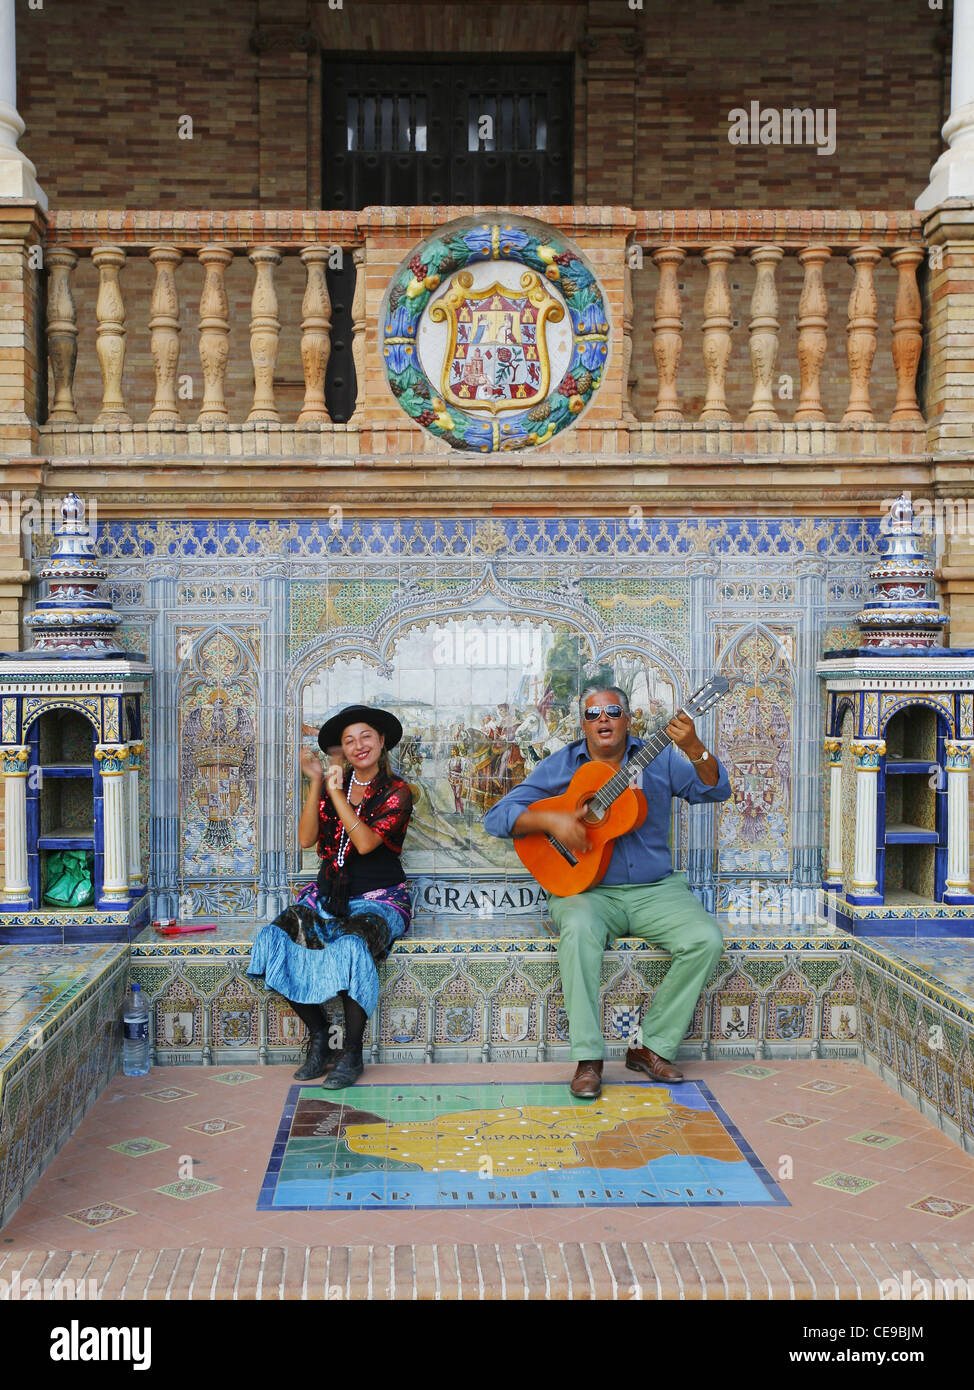 Des musiciens qui jouent dans le Flamenco Granada alcôve de la Plaza de España, Séville, Espagne Banque D'Images